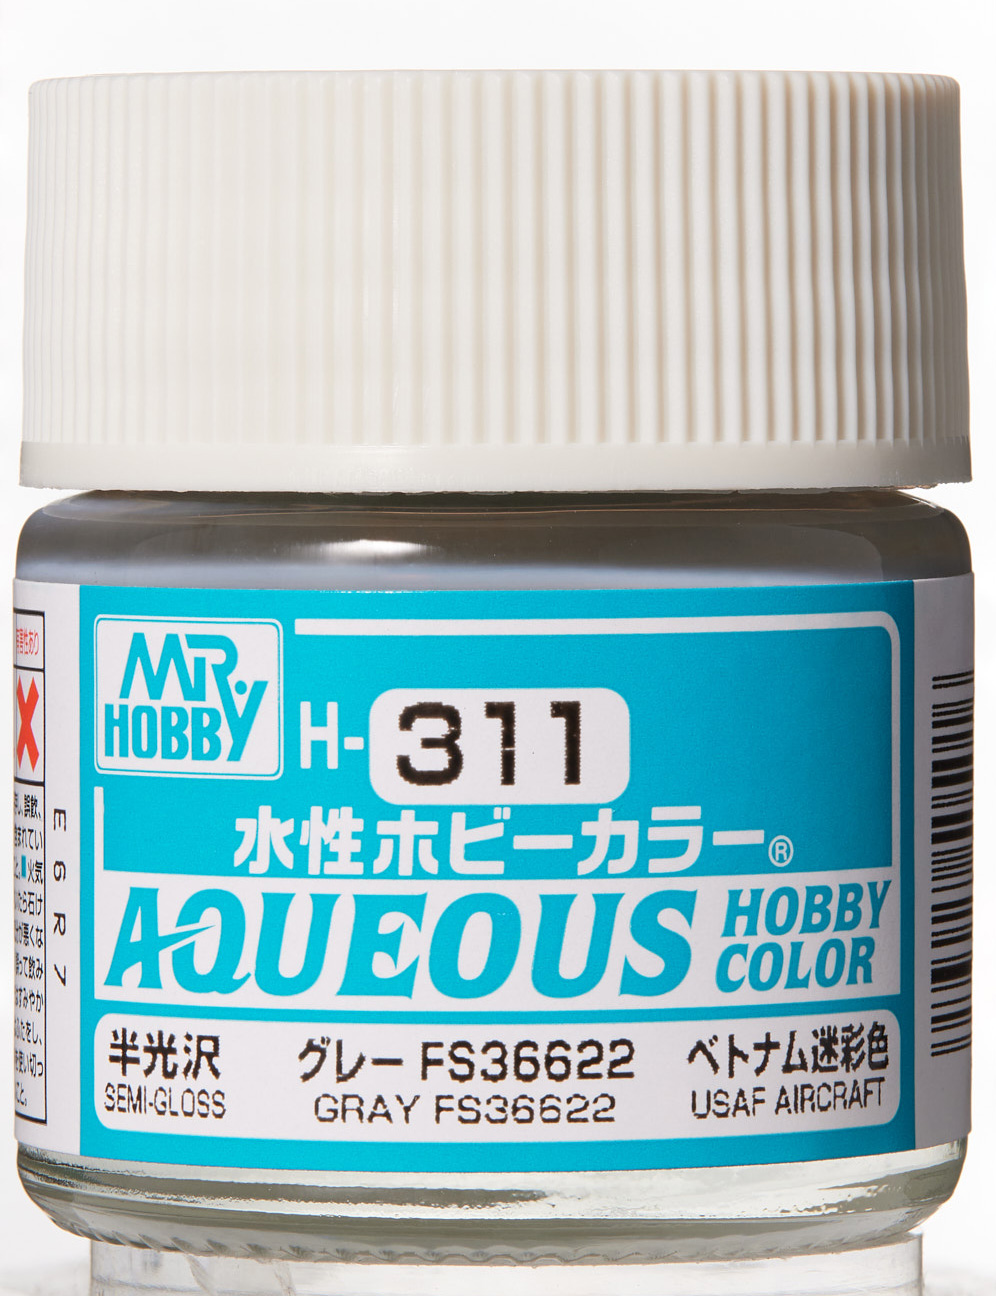 Mr. Aqueous Hobby Color - Gray FS36622 - H311 - Grau FS36622 